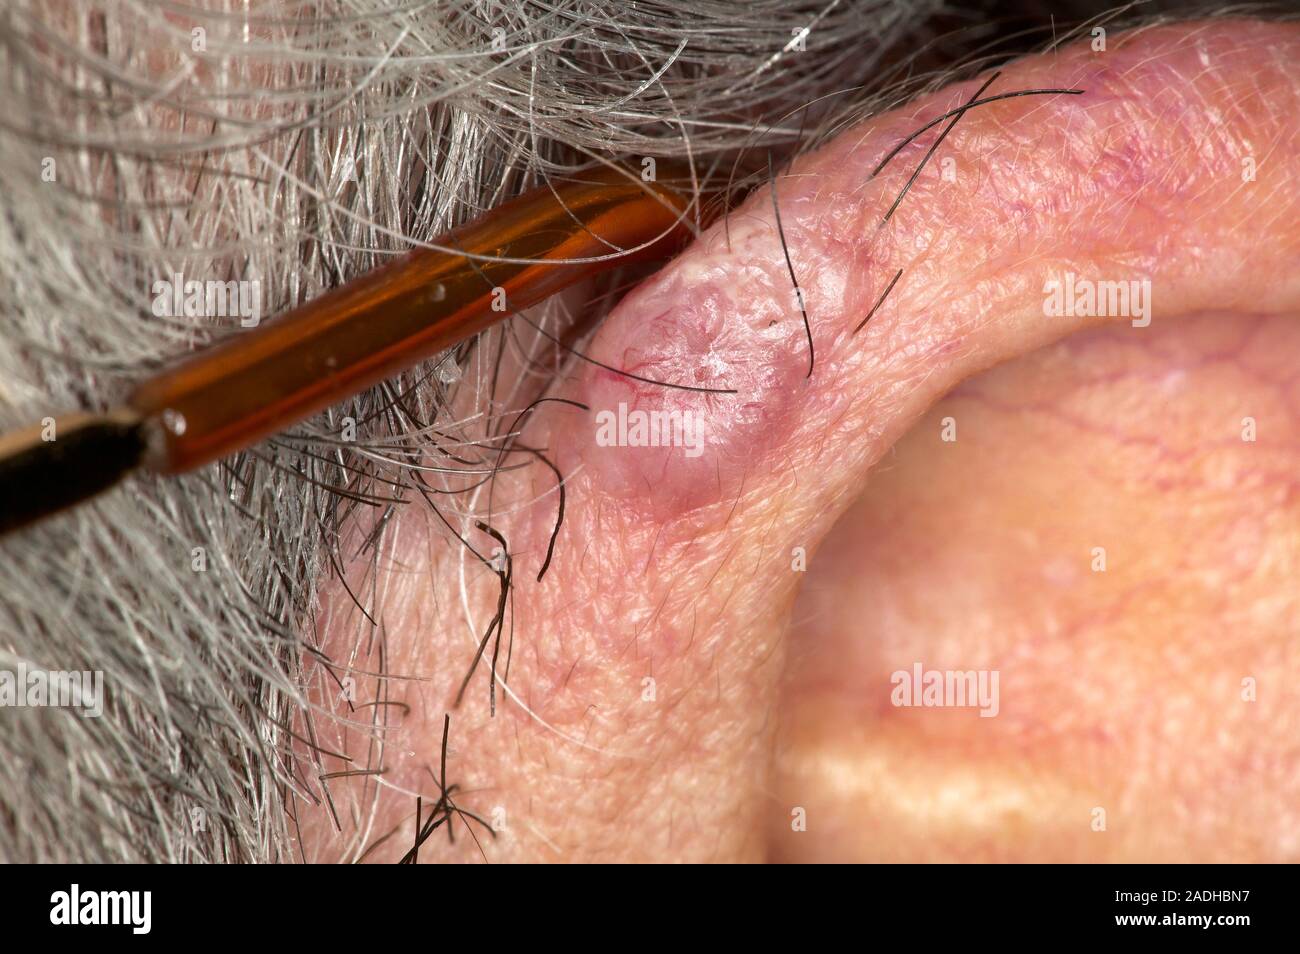 Parution du modèle. Le carcinome basocellulaire (CBC), ou ulcus rodens, sur  une oreille externe du patient (pinna). C'est la forme la plus courante de  cancer de la peau chez les juste Photo